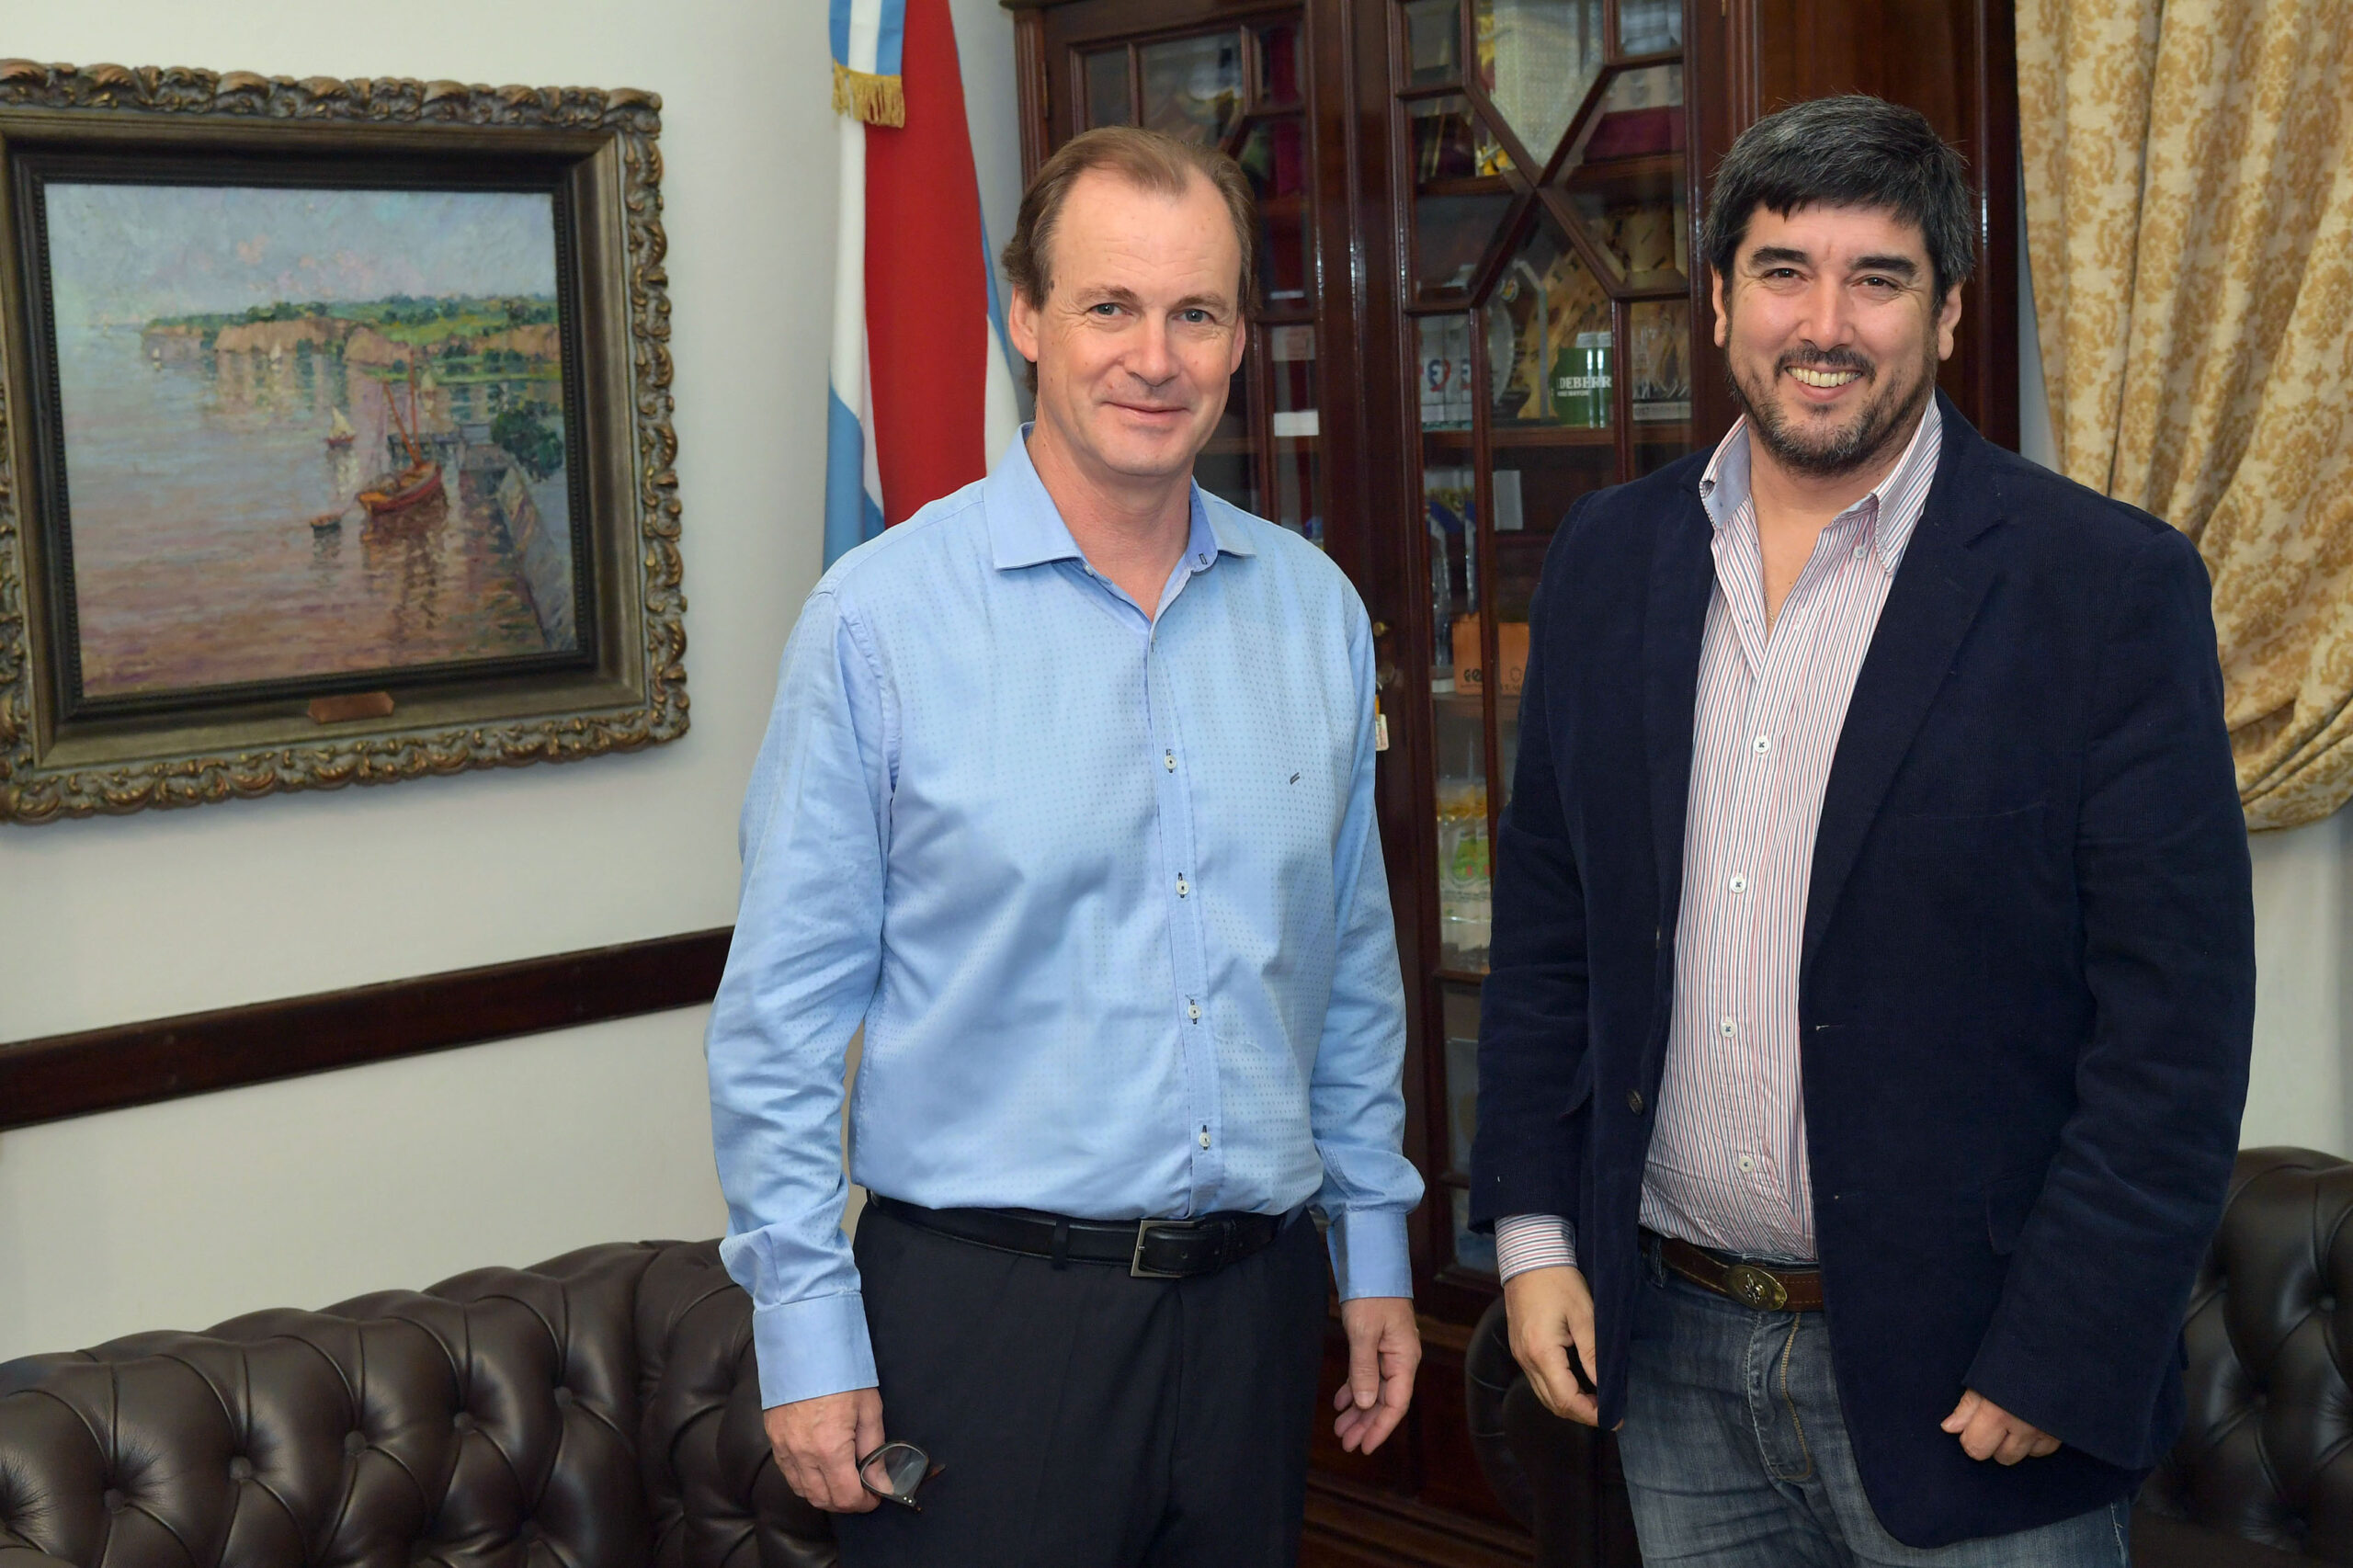 Del convenio firmado con el Presidente, Villaguay trendrá un nuevo hospital